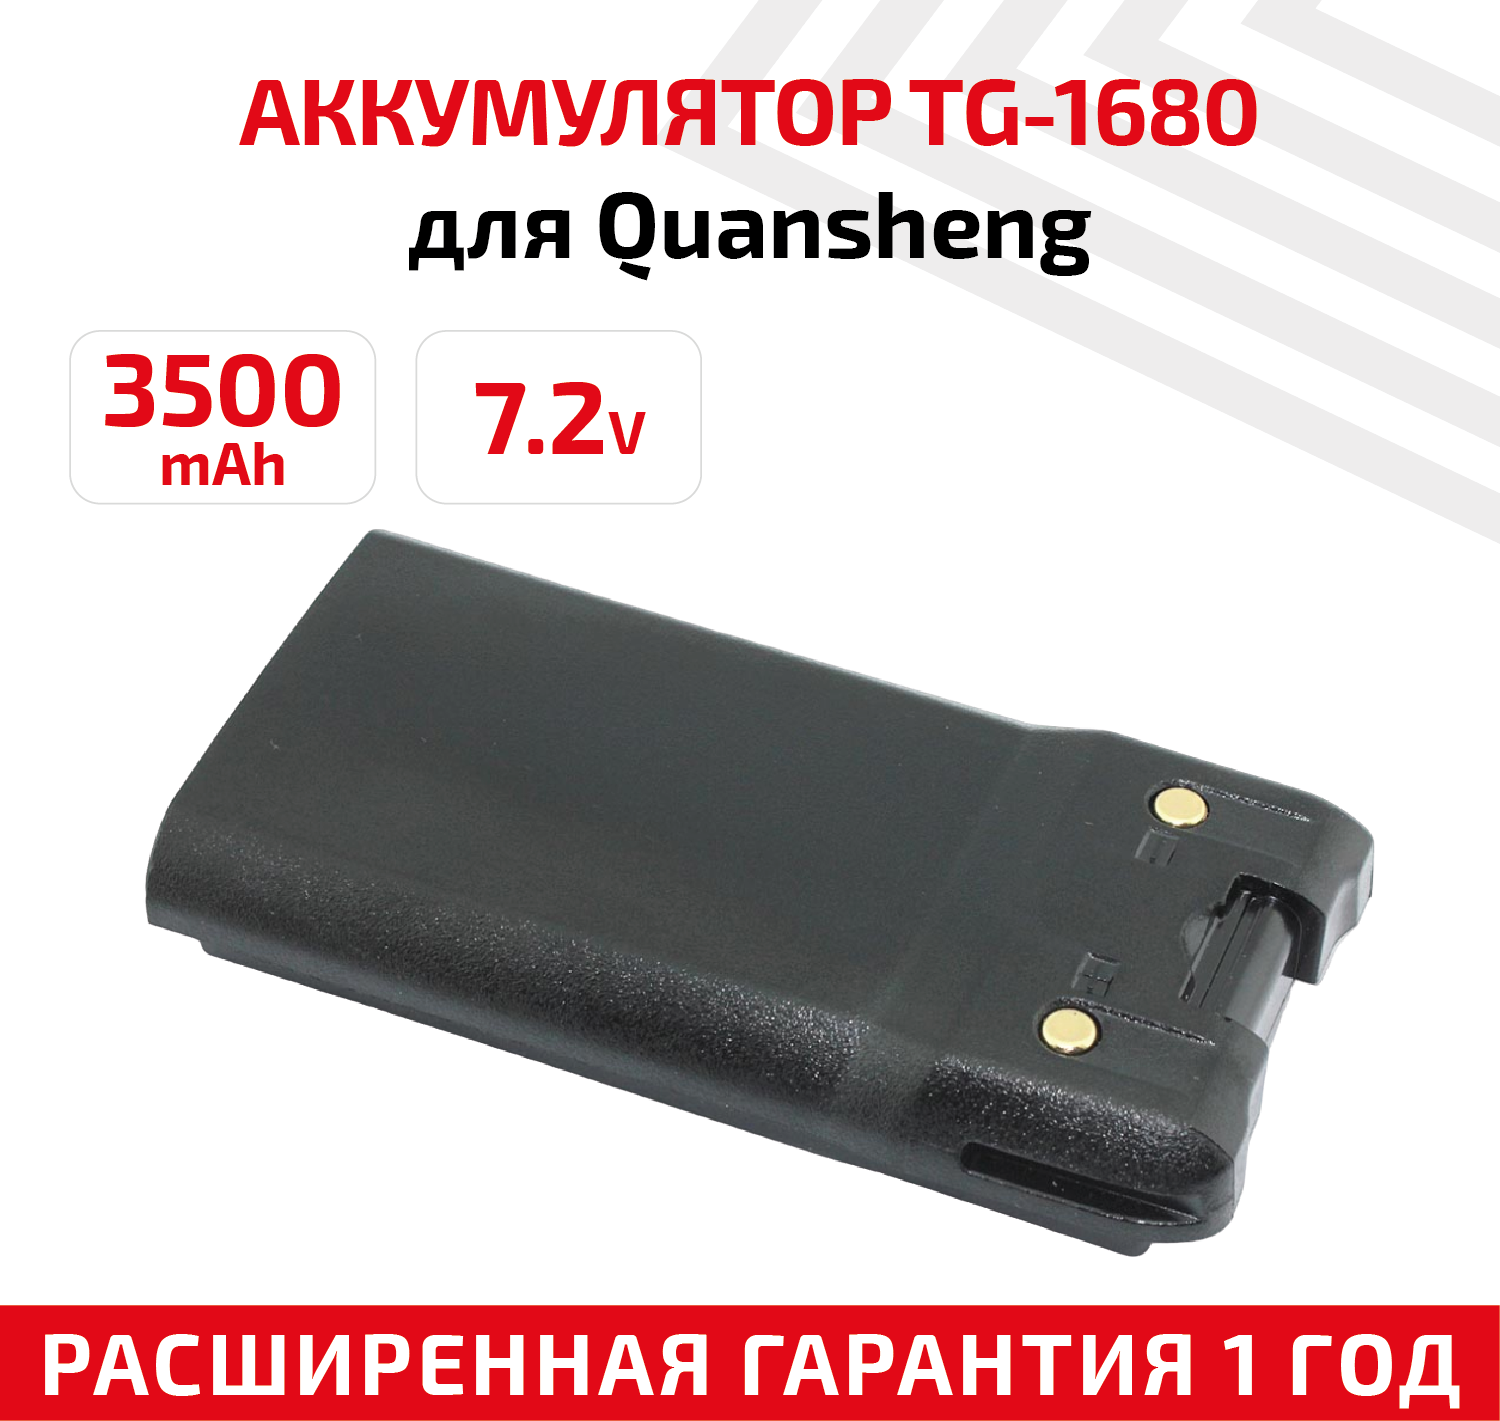 Аккумуляторная батарея (АКБ) для рации (радиостанции) Quansheng TG-1680 Vector VT-44 Turbo 7.2В 3500мАч Li-ion